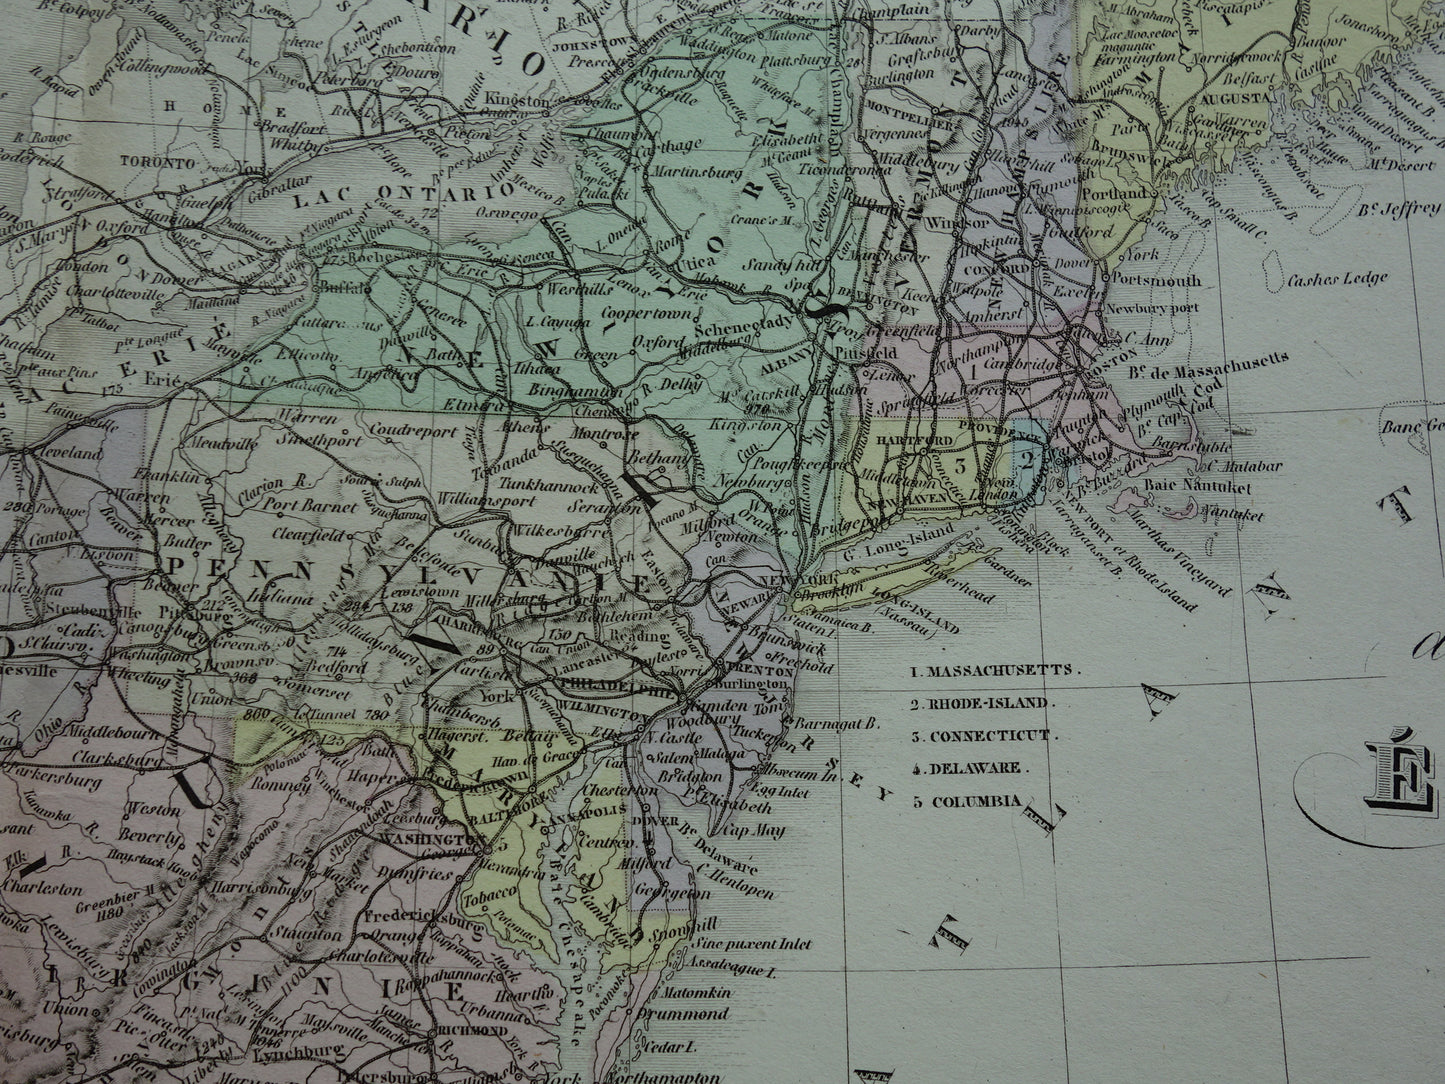 VERENIGDE STATEN antieke kaart van de VS 145+ jaar oude landkaart van Oostkust Amerika USA originele vintage historische kaarten